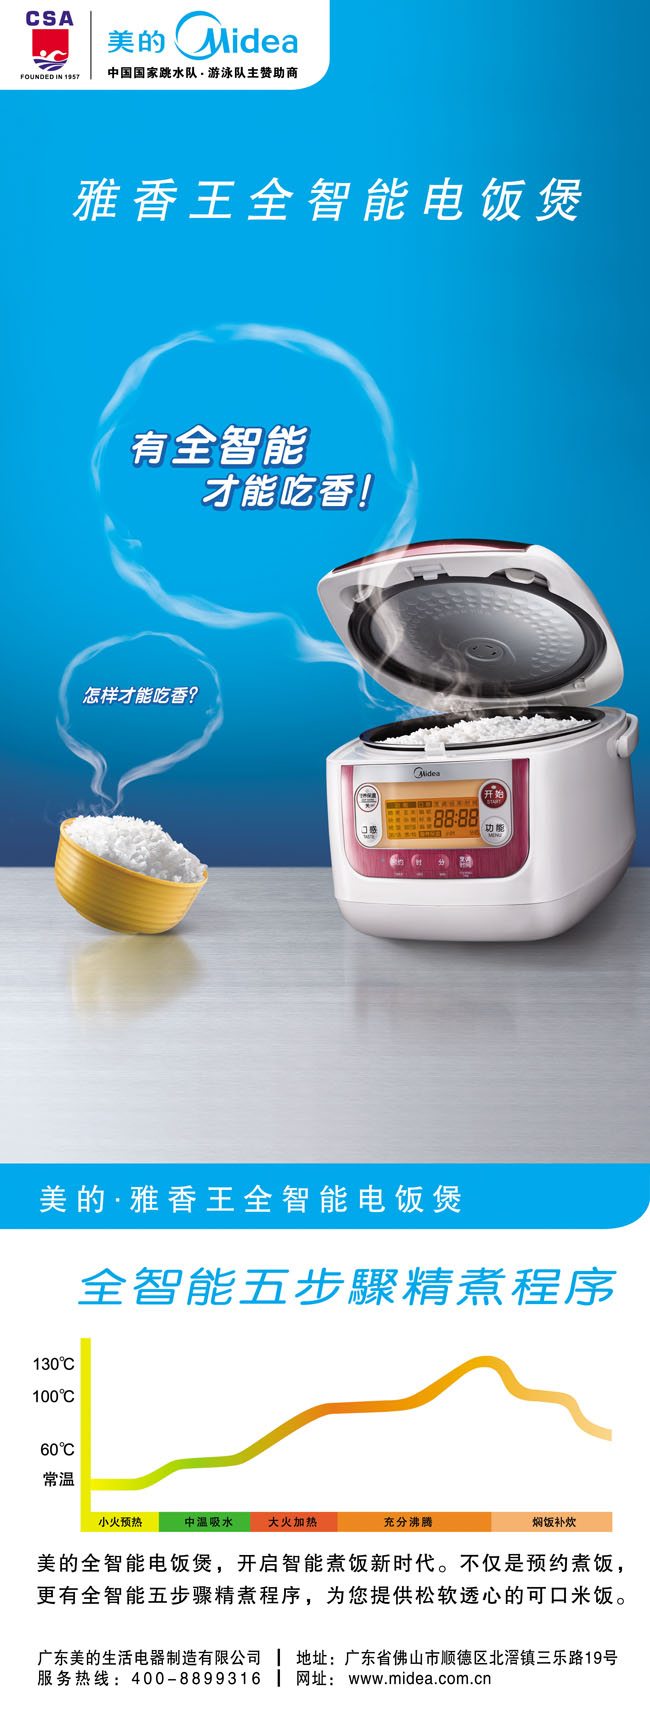 雅香智能美的电饭煲广告海报PSD素材